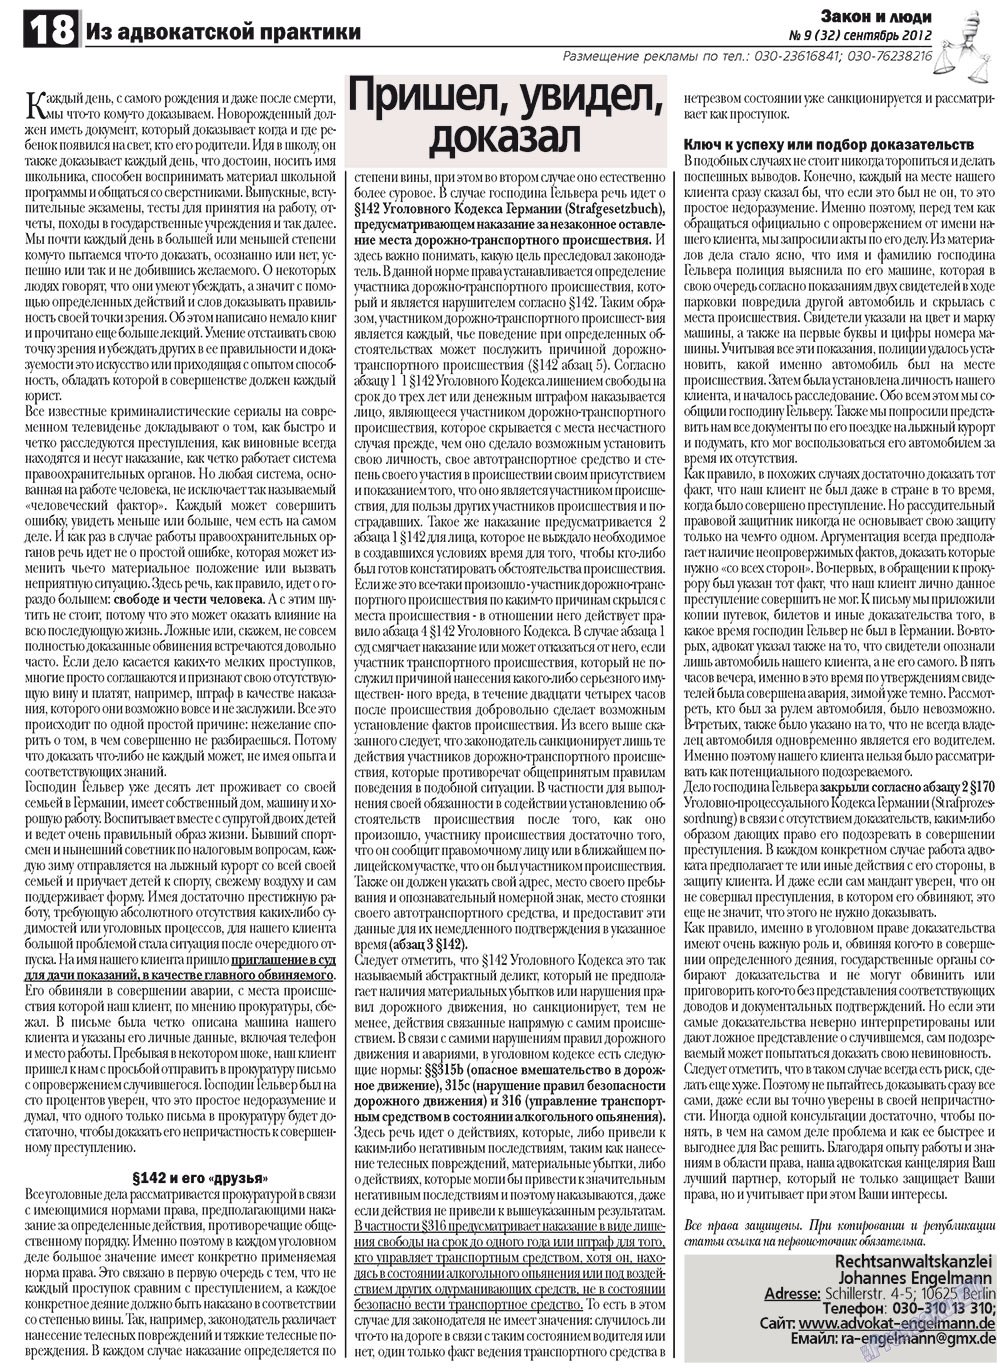 Закон и люди, газета. 2012 №9 стр.18